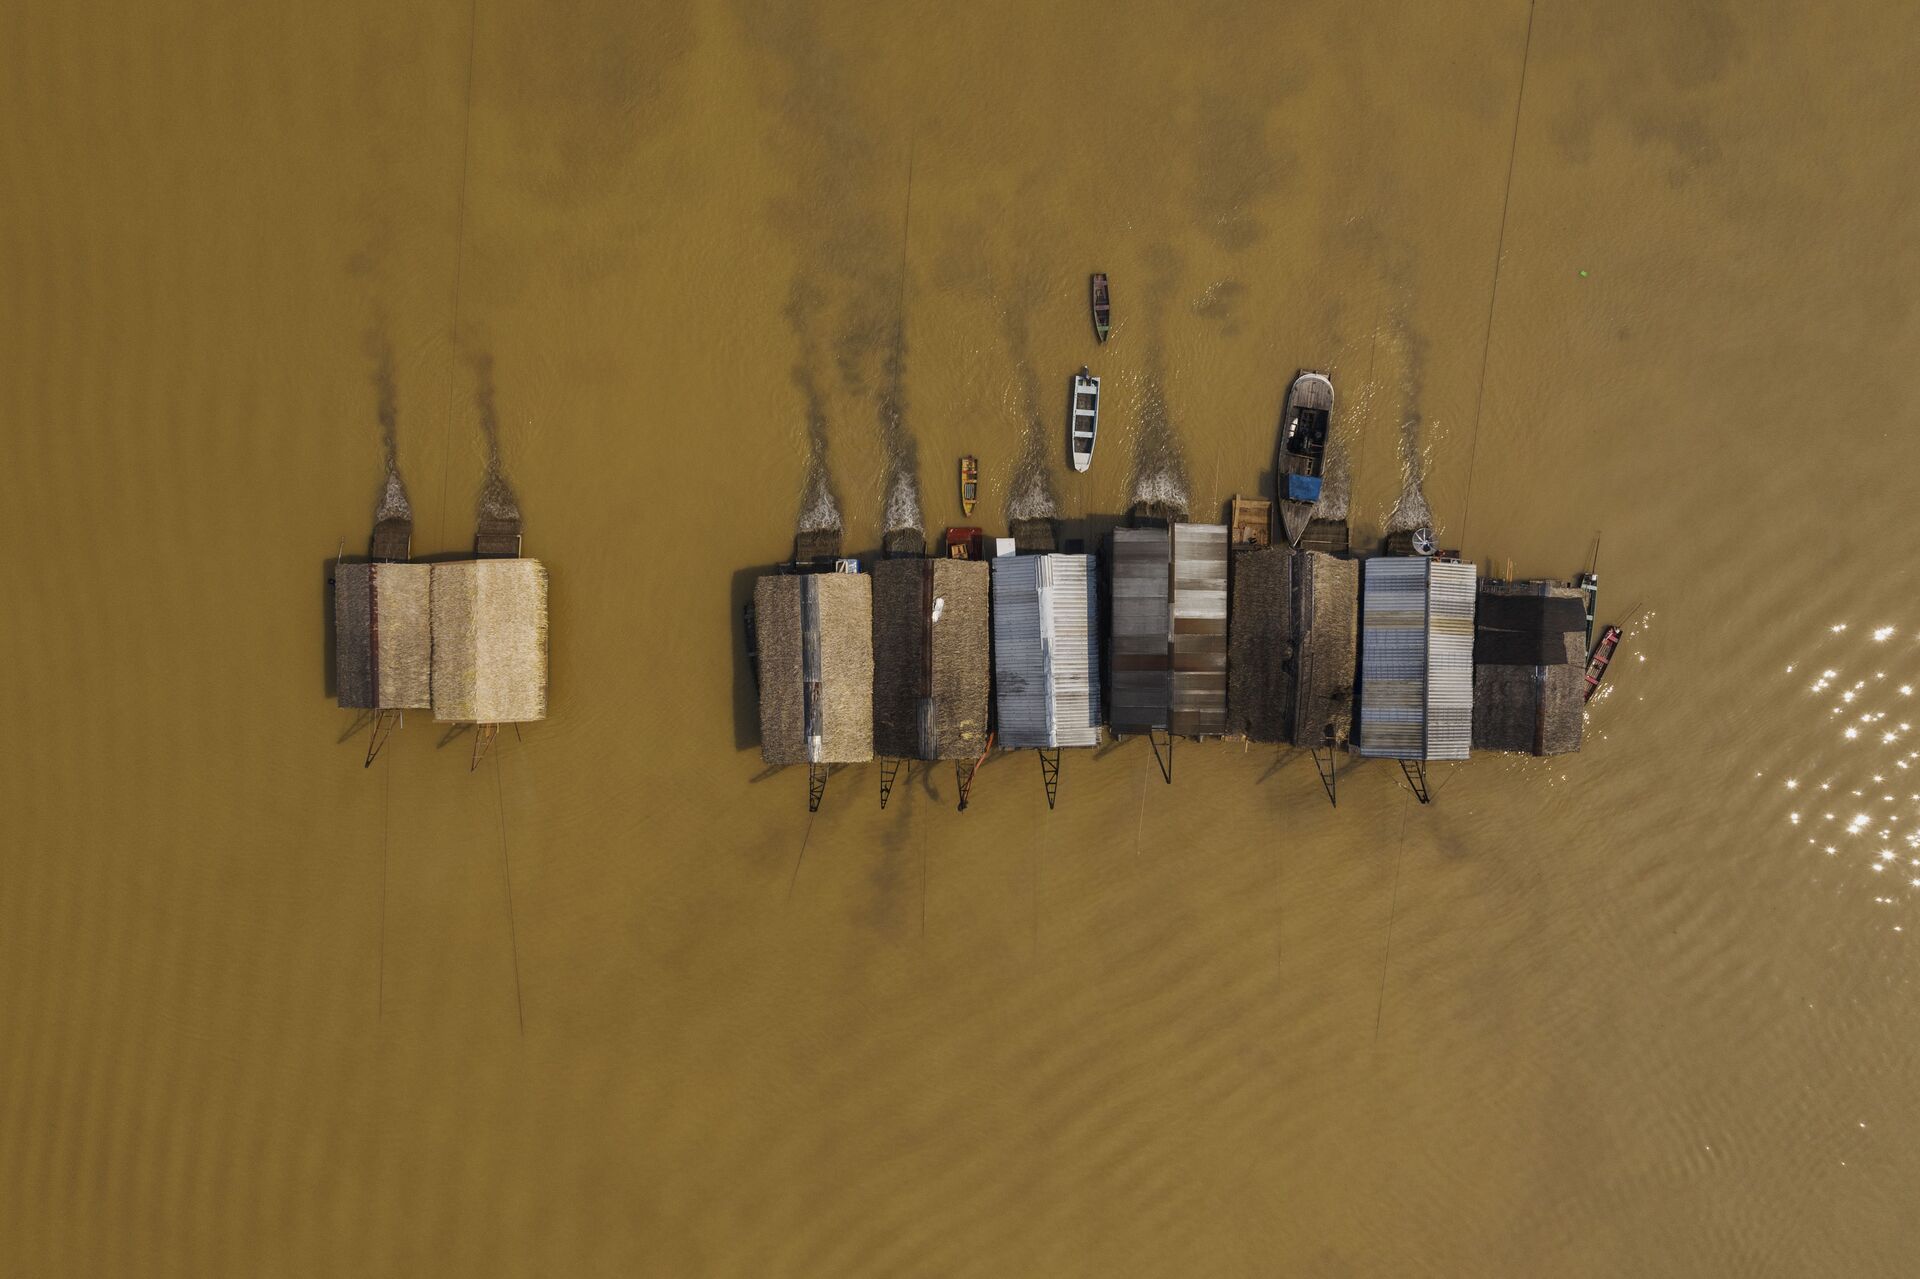 Balsas de garimpo de ouro operam ilegalmente no rio Madeira, em frente a cidade de Humaitá, no sul do Amazonas - Sputnik Brasil, 1920, 26.11.2021